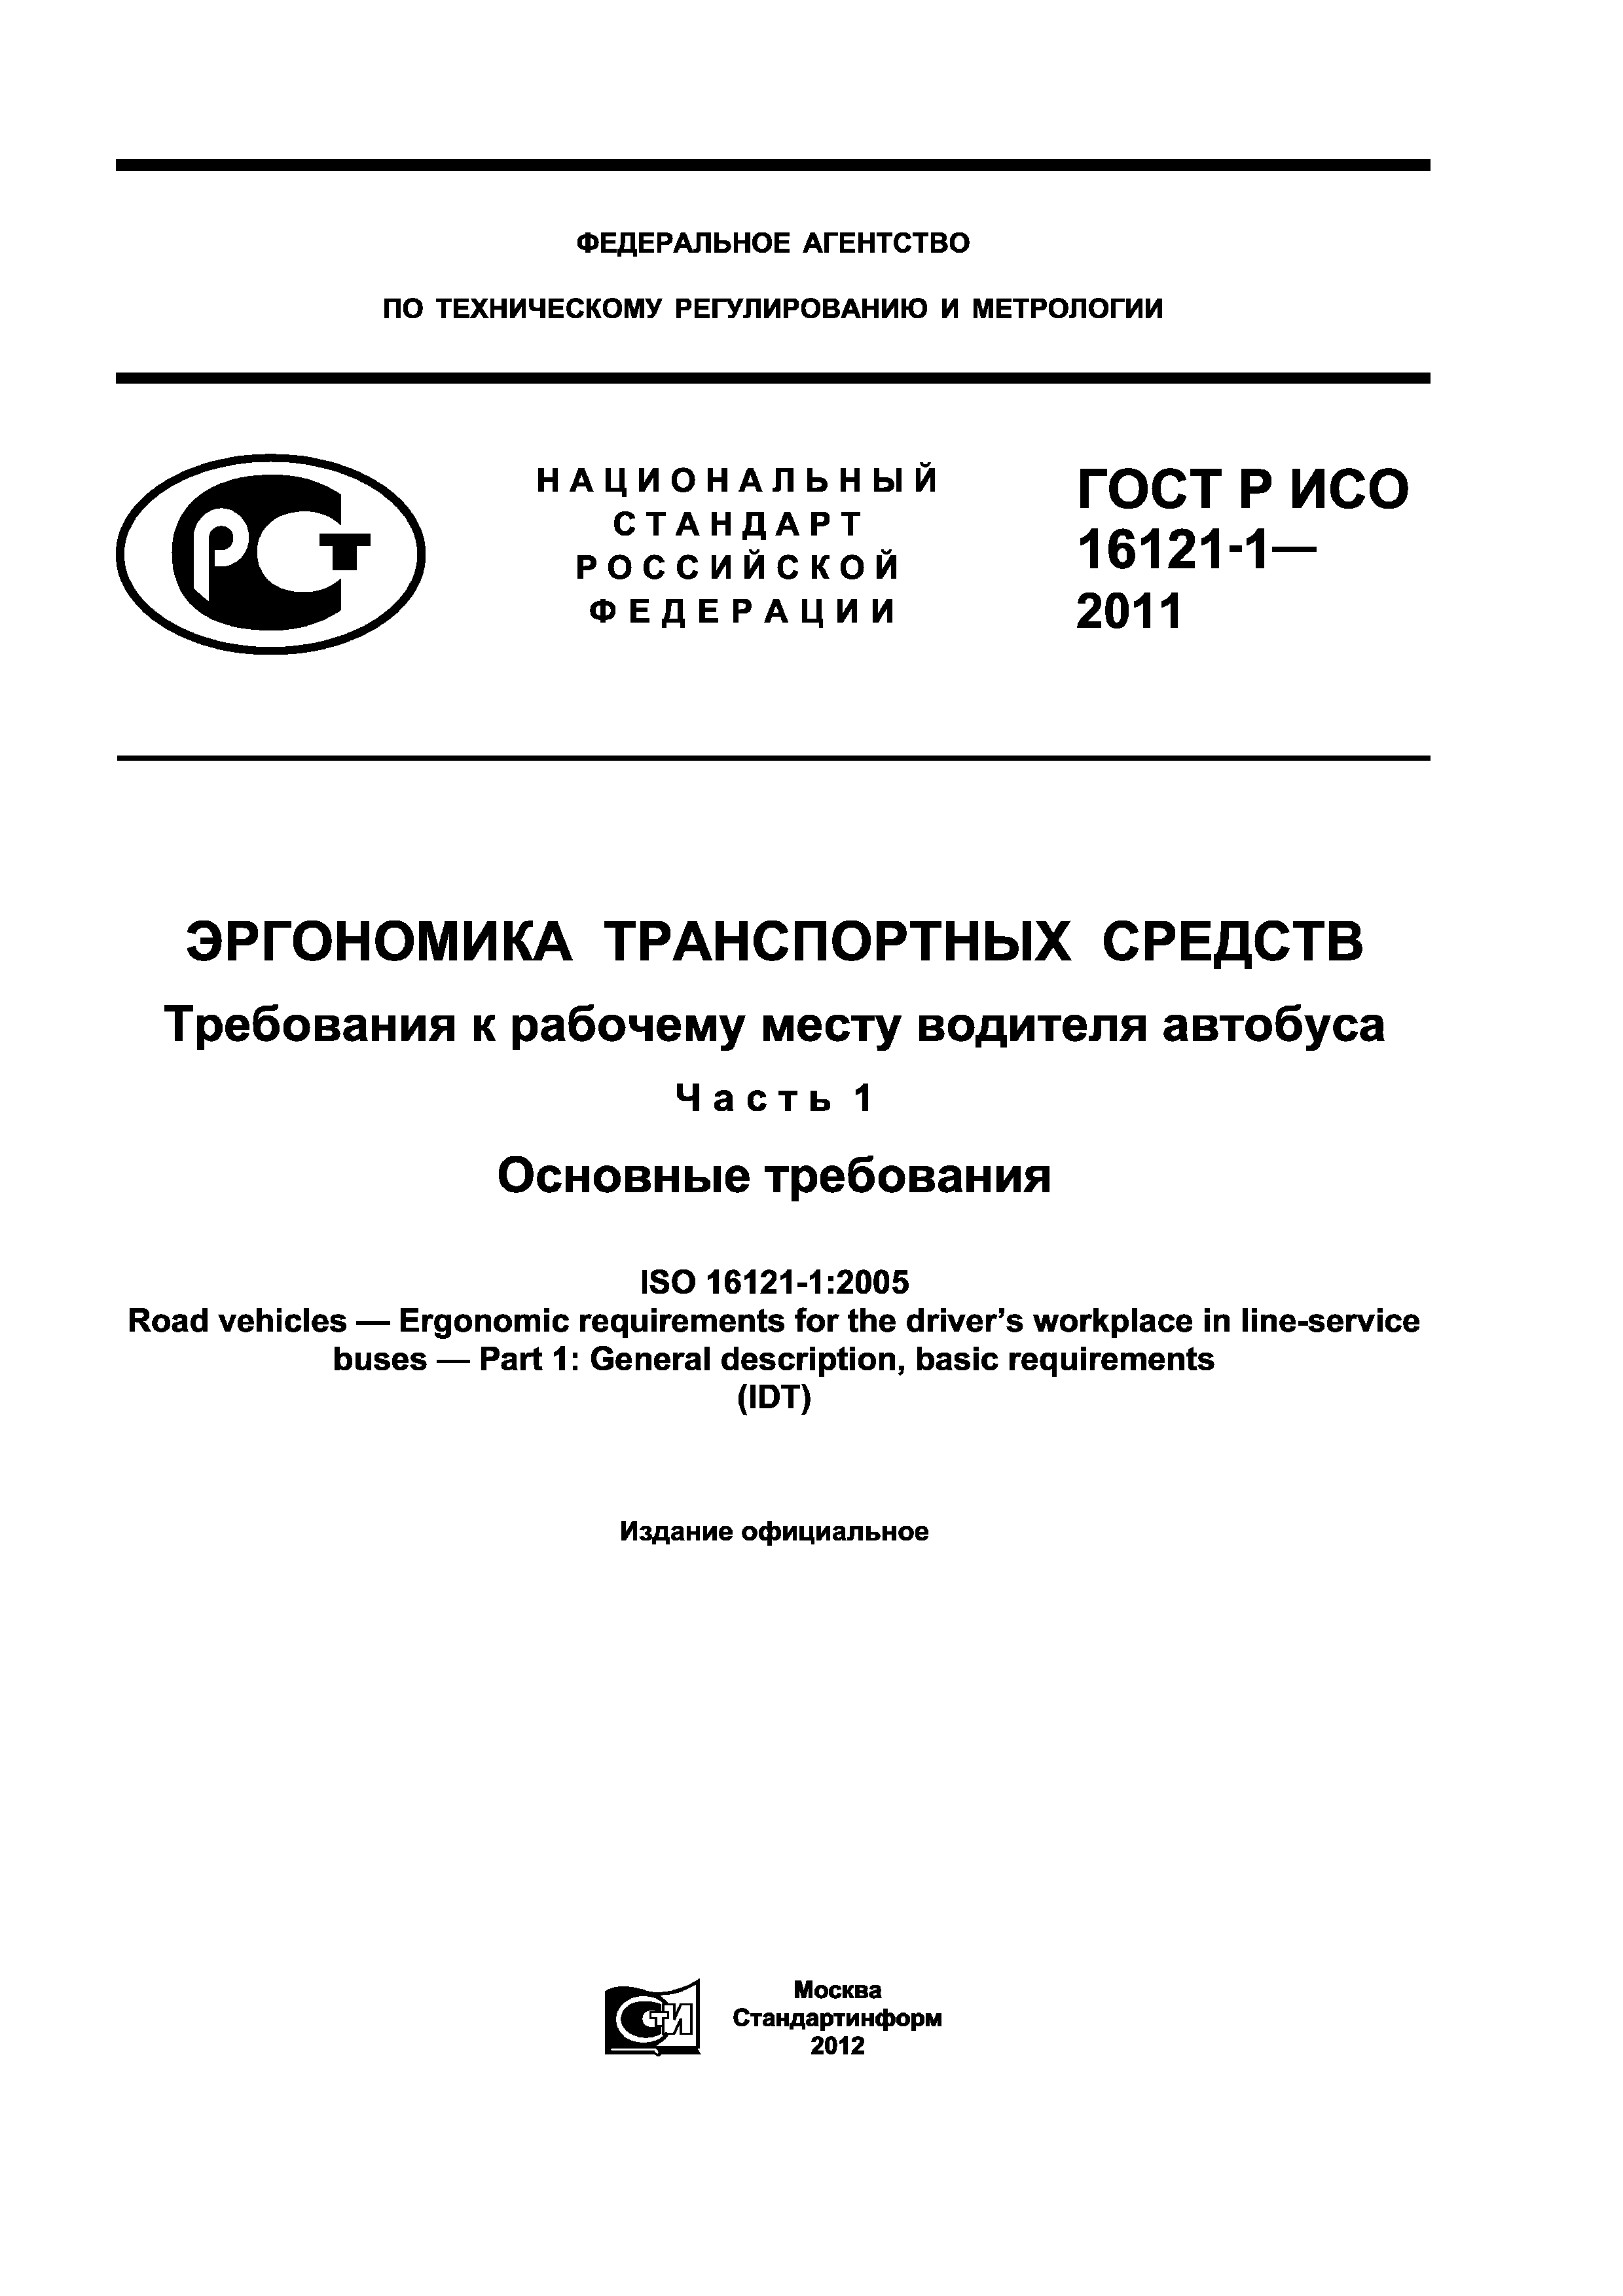 ГОСТ Р ИСО 16121-1-2011